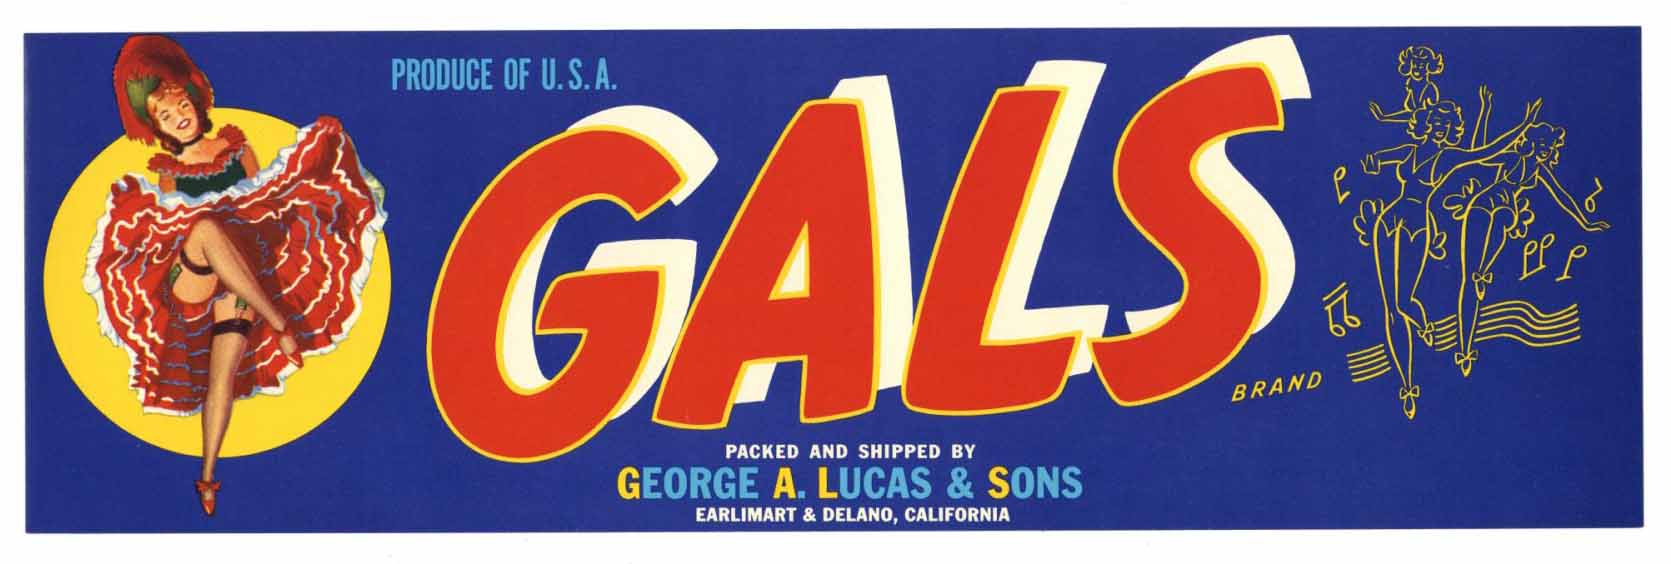 Gals Brand Vintage Fruit Crate Label